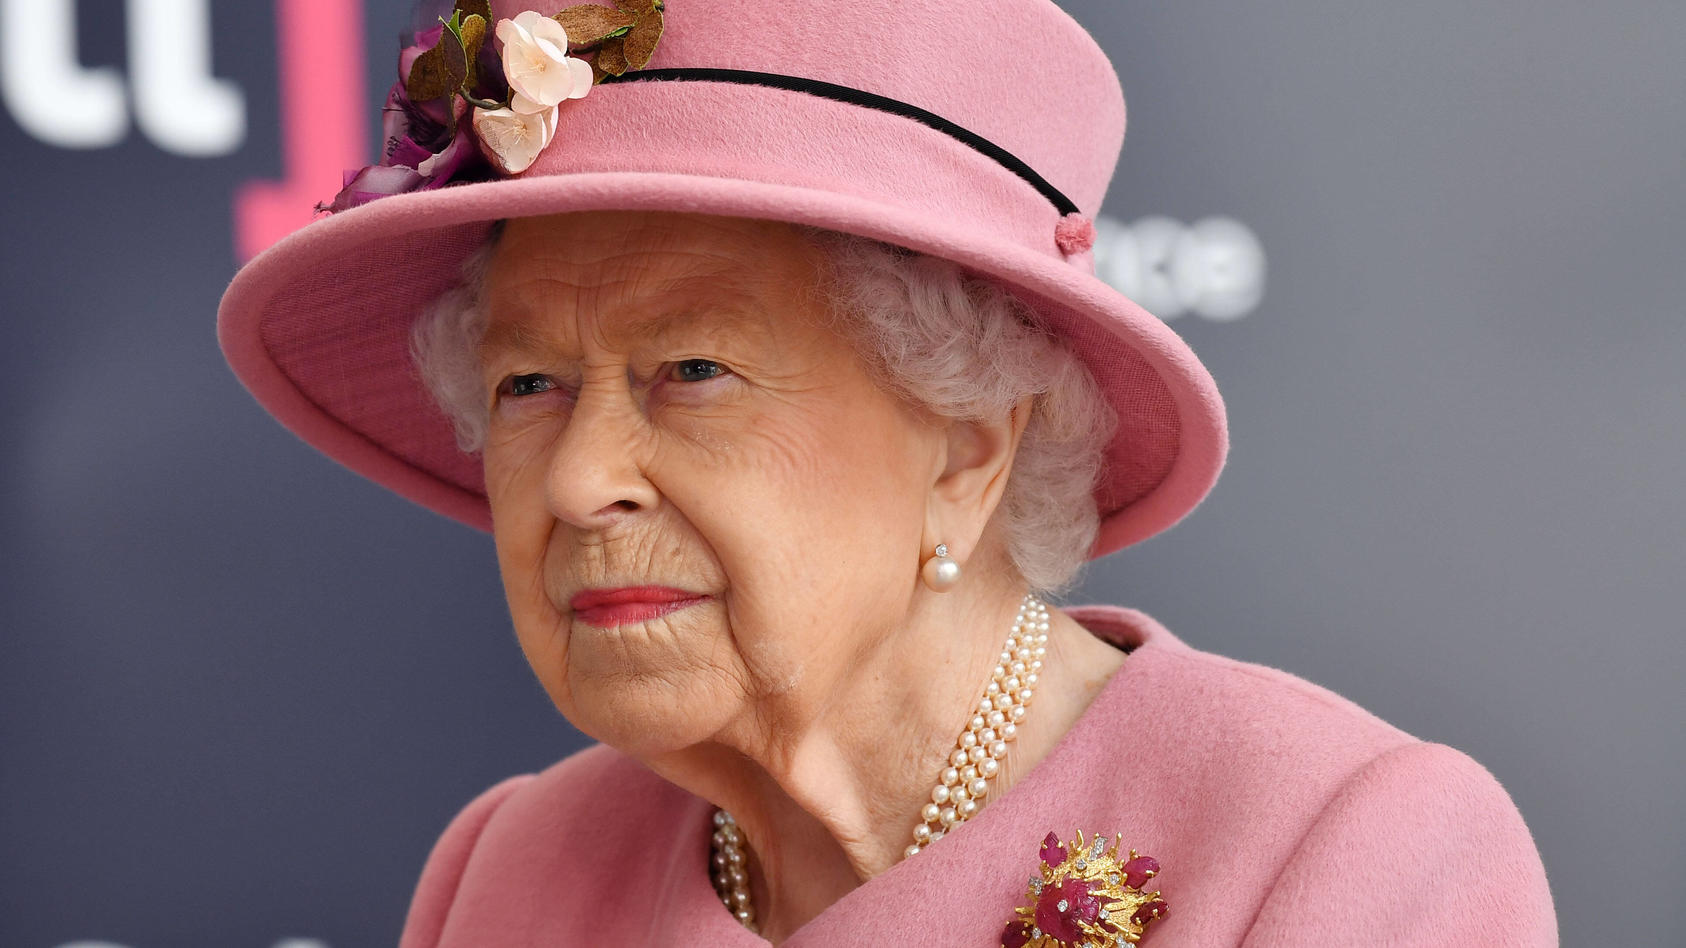 Images Of Queen Elizabeth / 1 queen elizabeth wpa pool getty images the ...